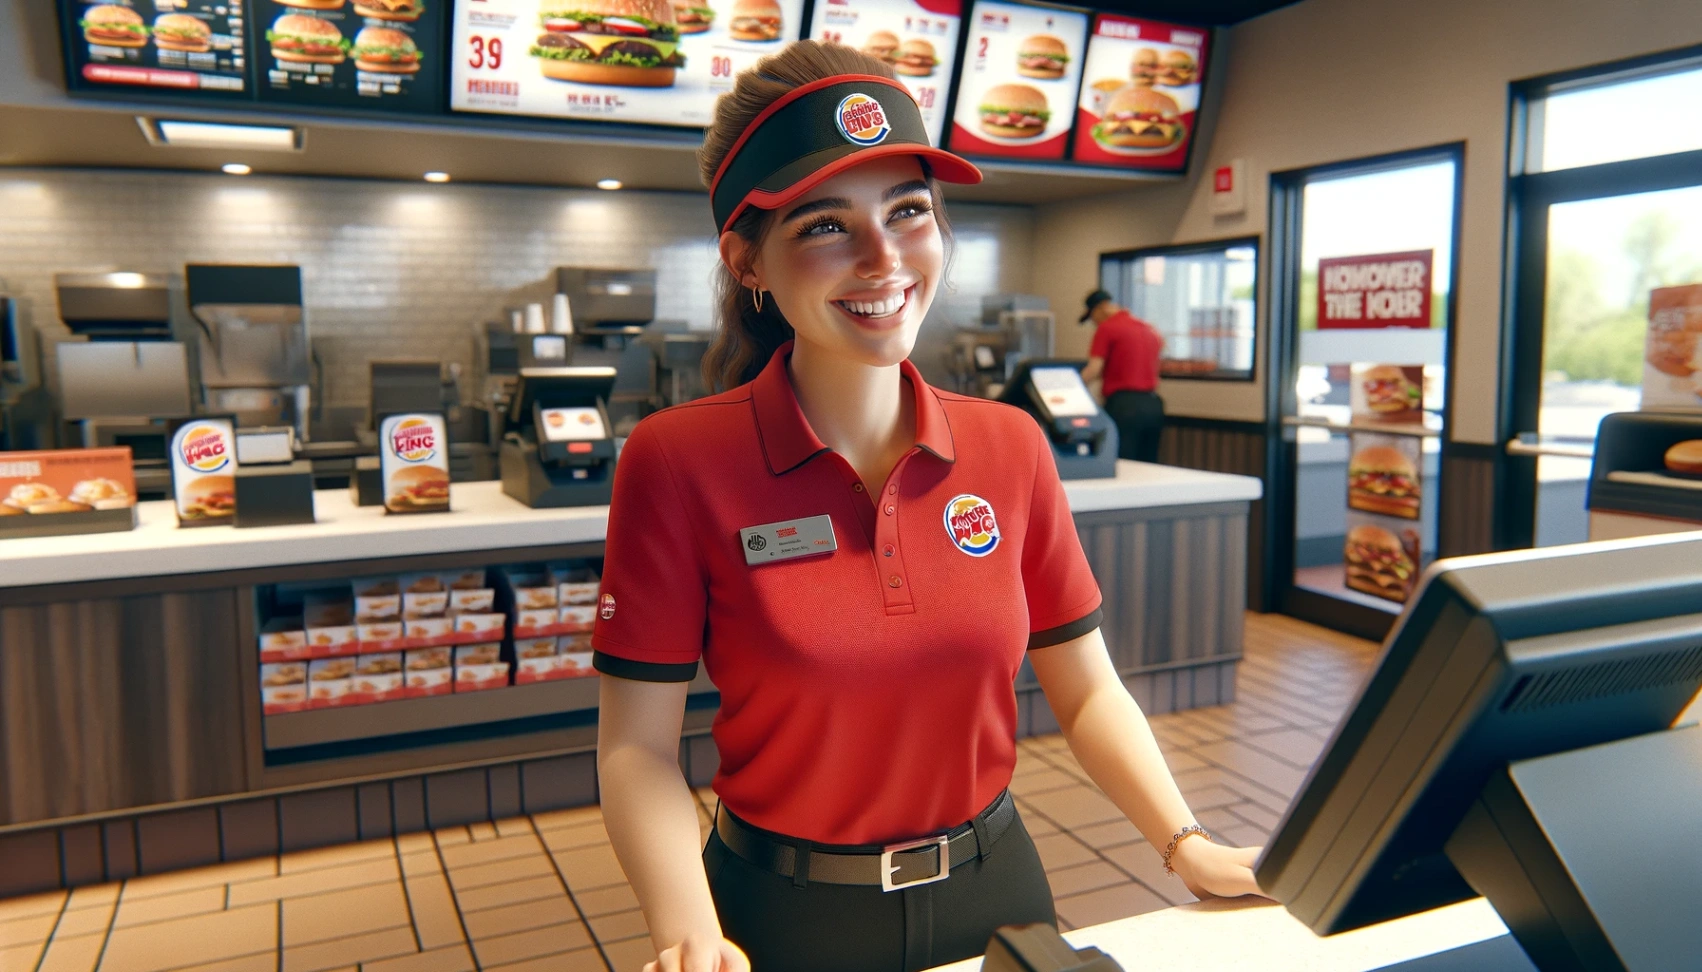 Burger King - איך להגיש בקשה למשרות